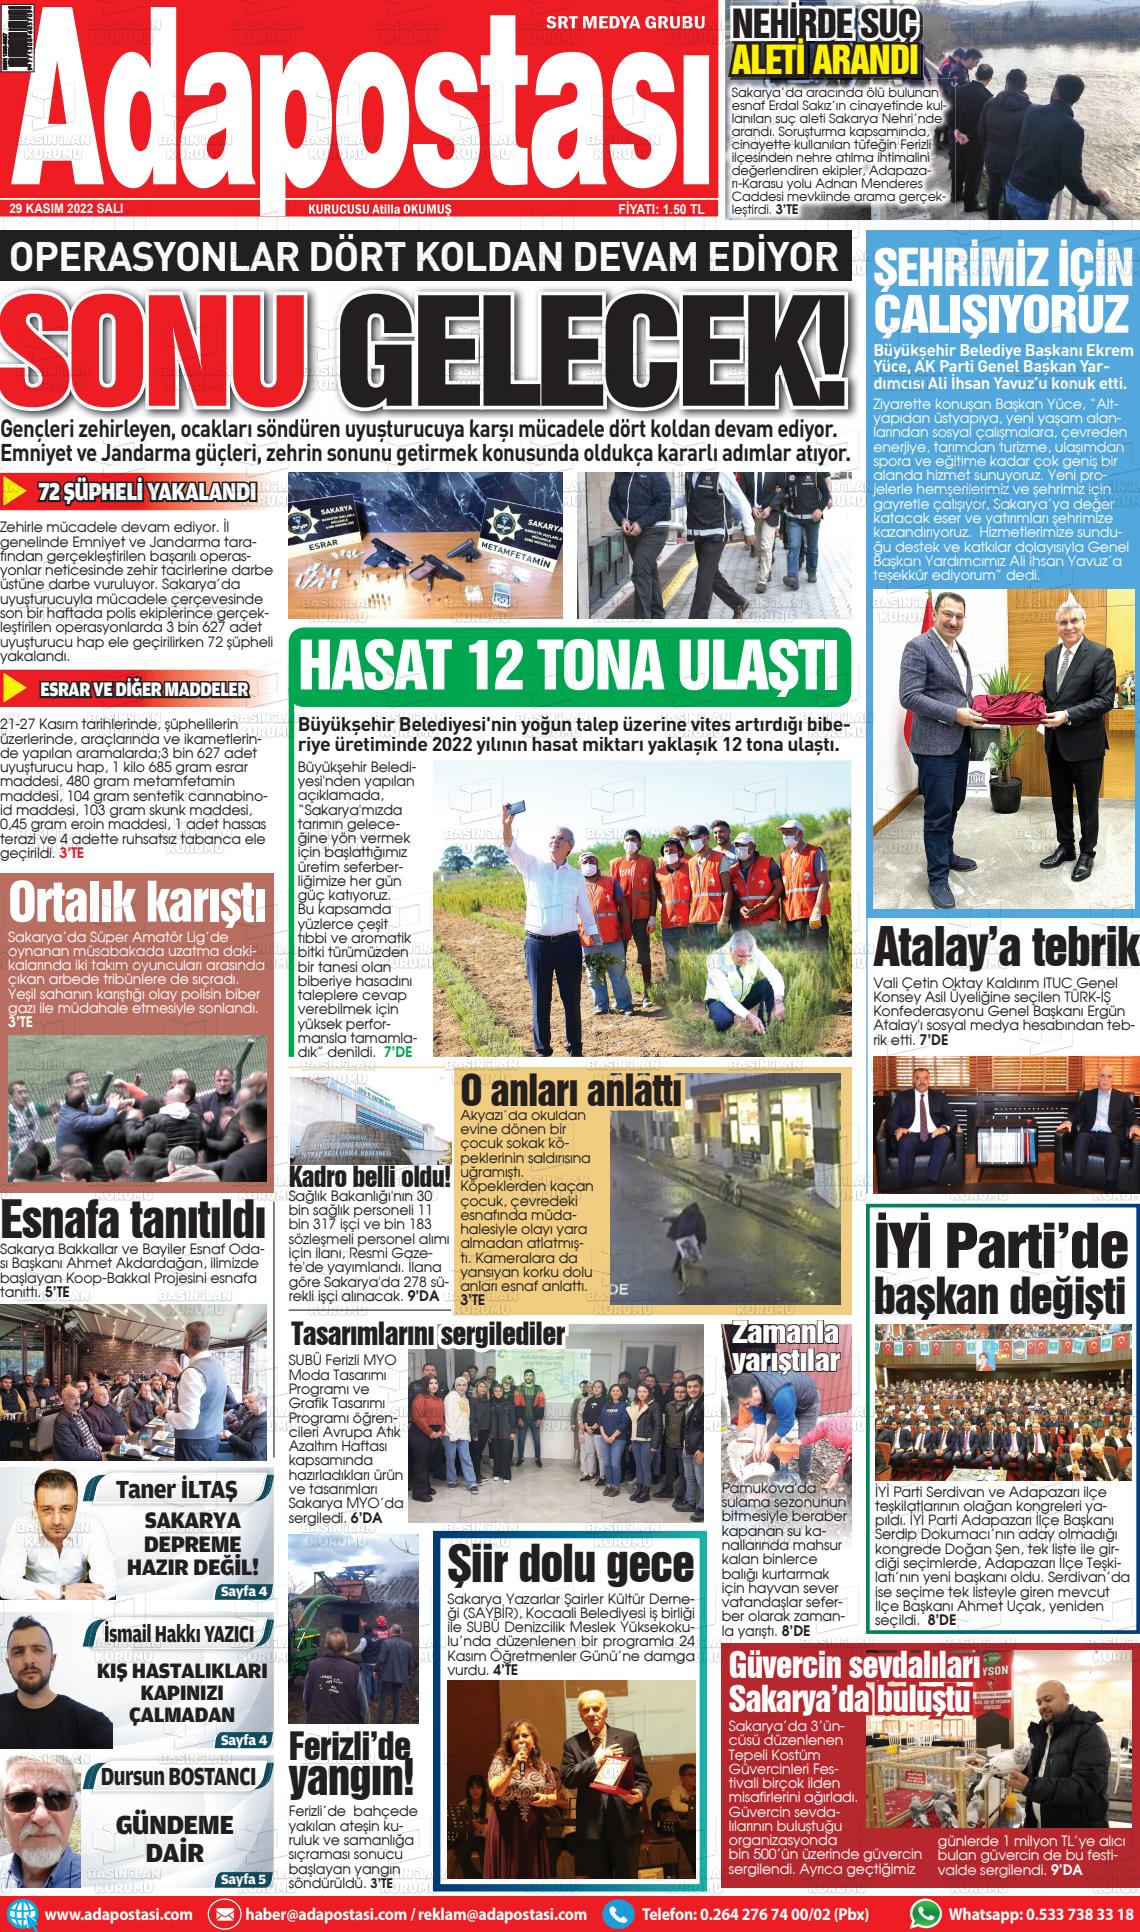 29 Kasım 2022 Ada Postası Gazete Manşeti